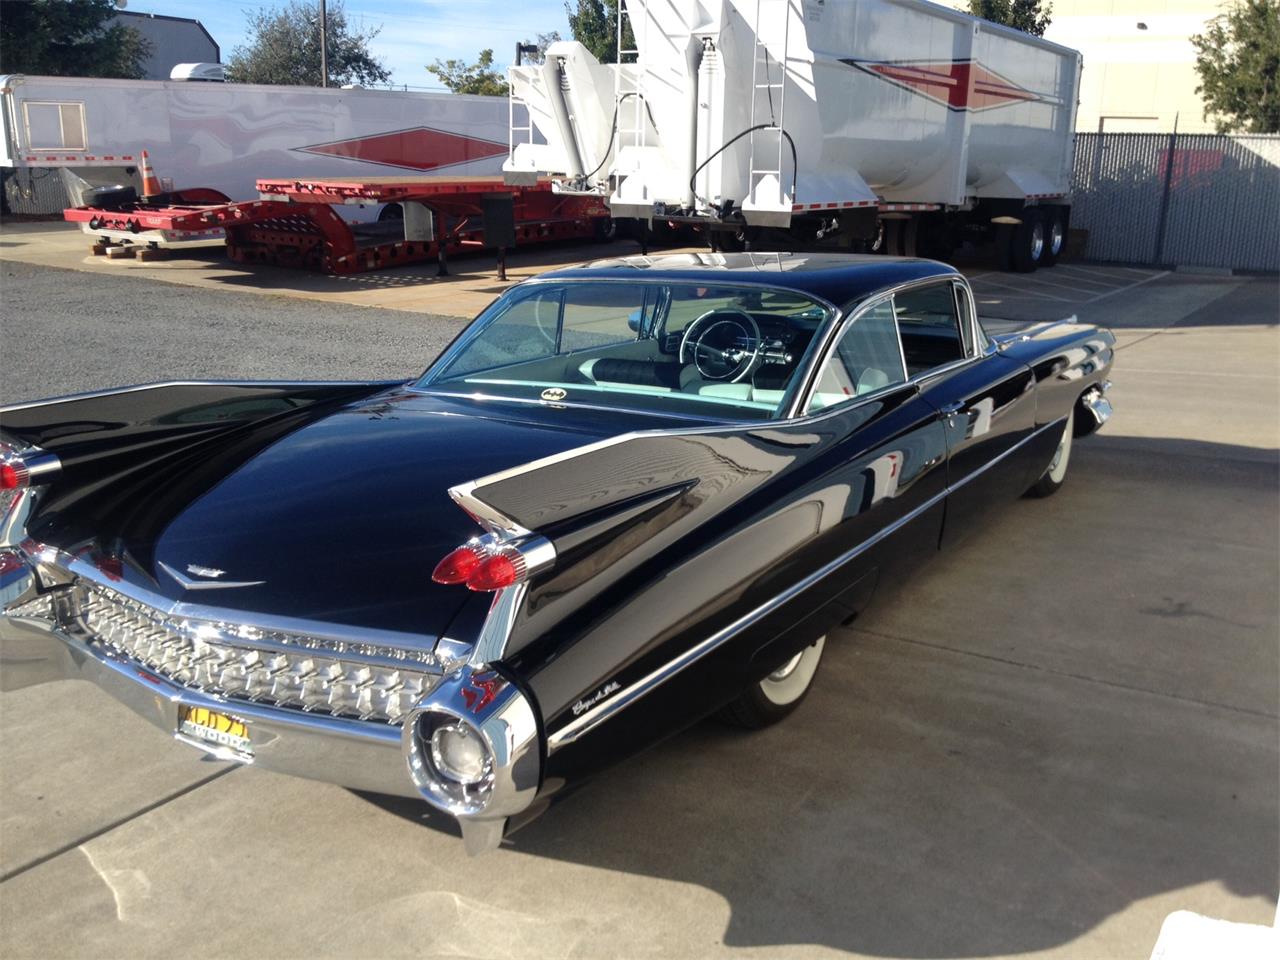 For Sale: 1959 Cadillac Coupe DeVille in Santa Rosa, California.